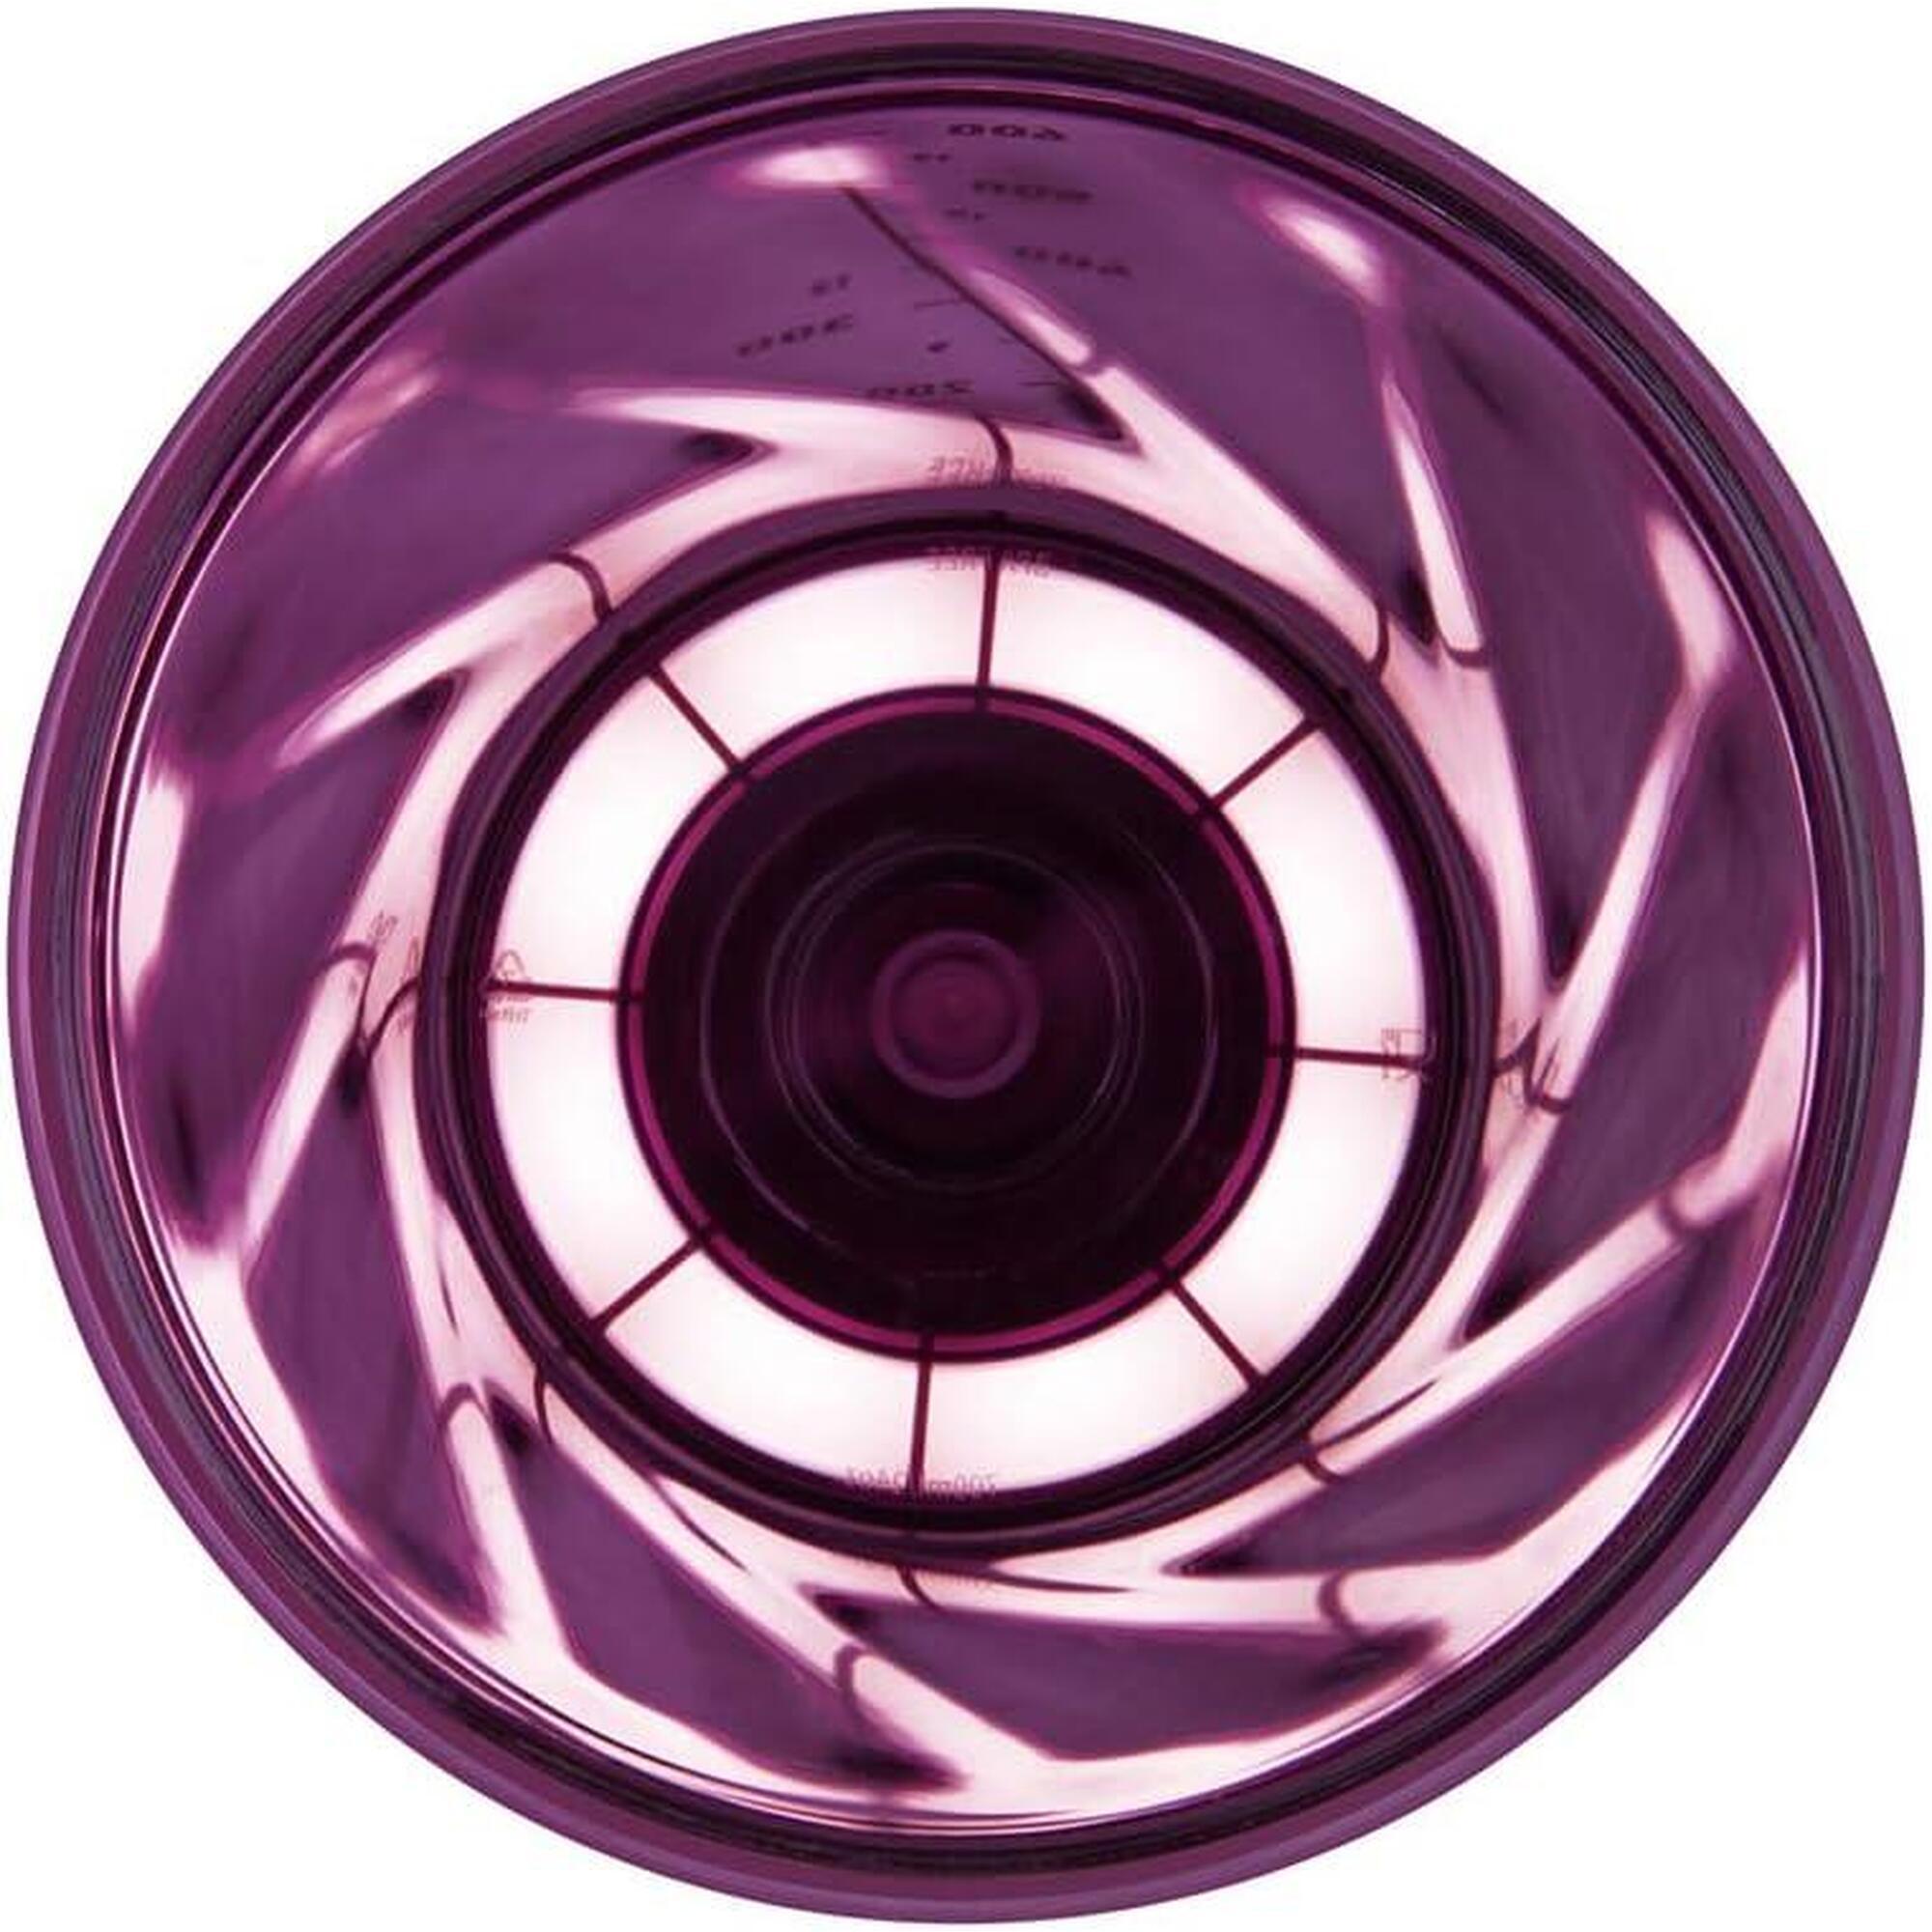 電動蛋白質搖搖杯 VortexBoost1 24盎司/700毫升 - 紫色